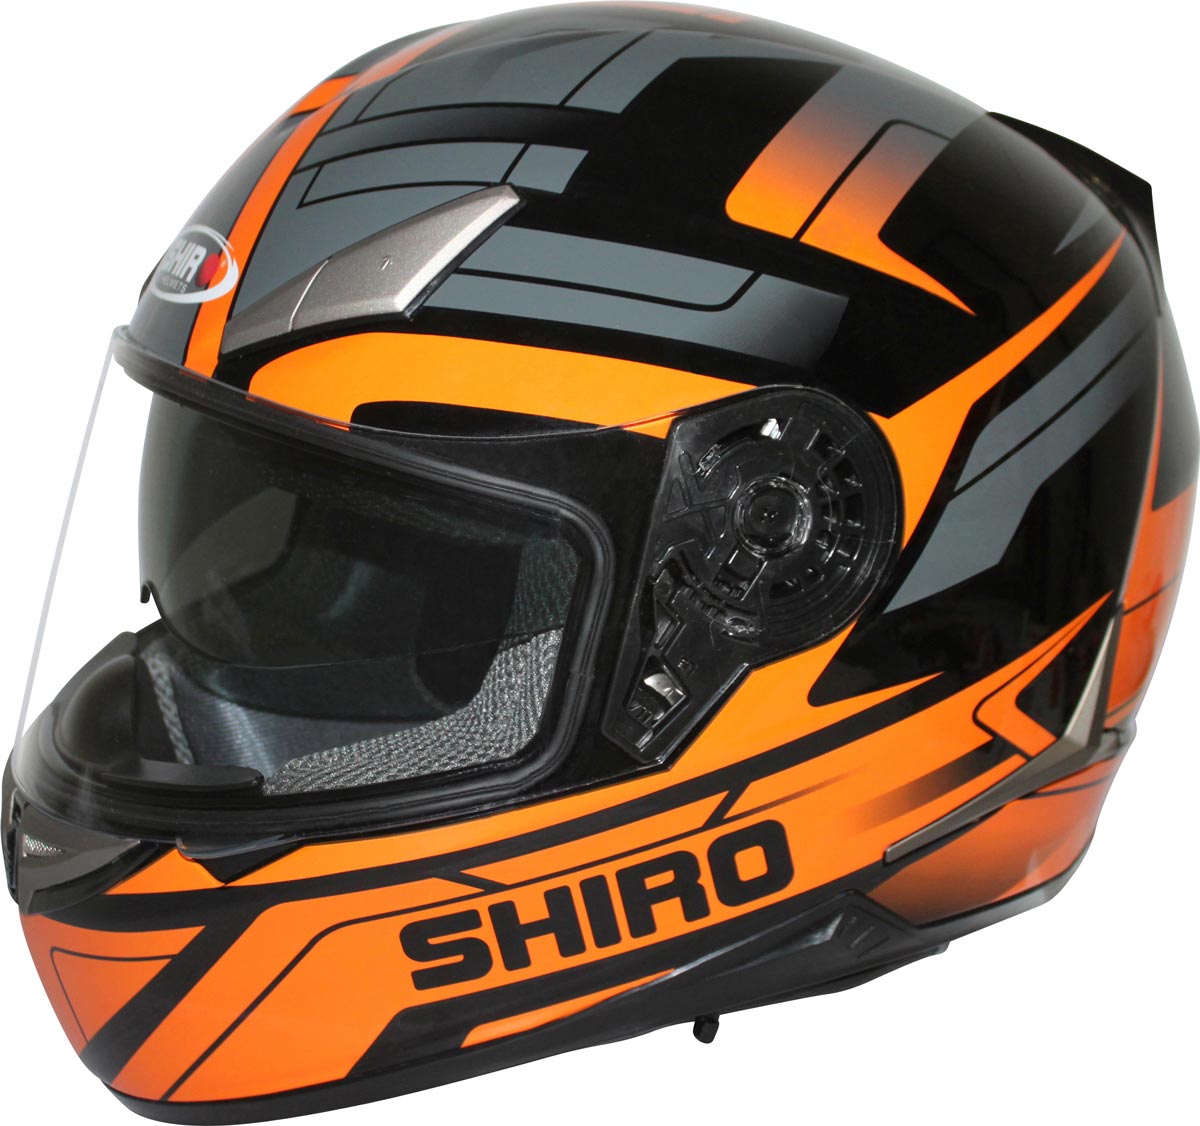 Pour 2015, Shiro a lancé ce casque intégral SH-715 au look Racing